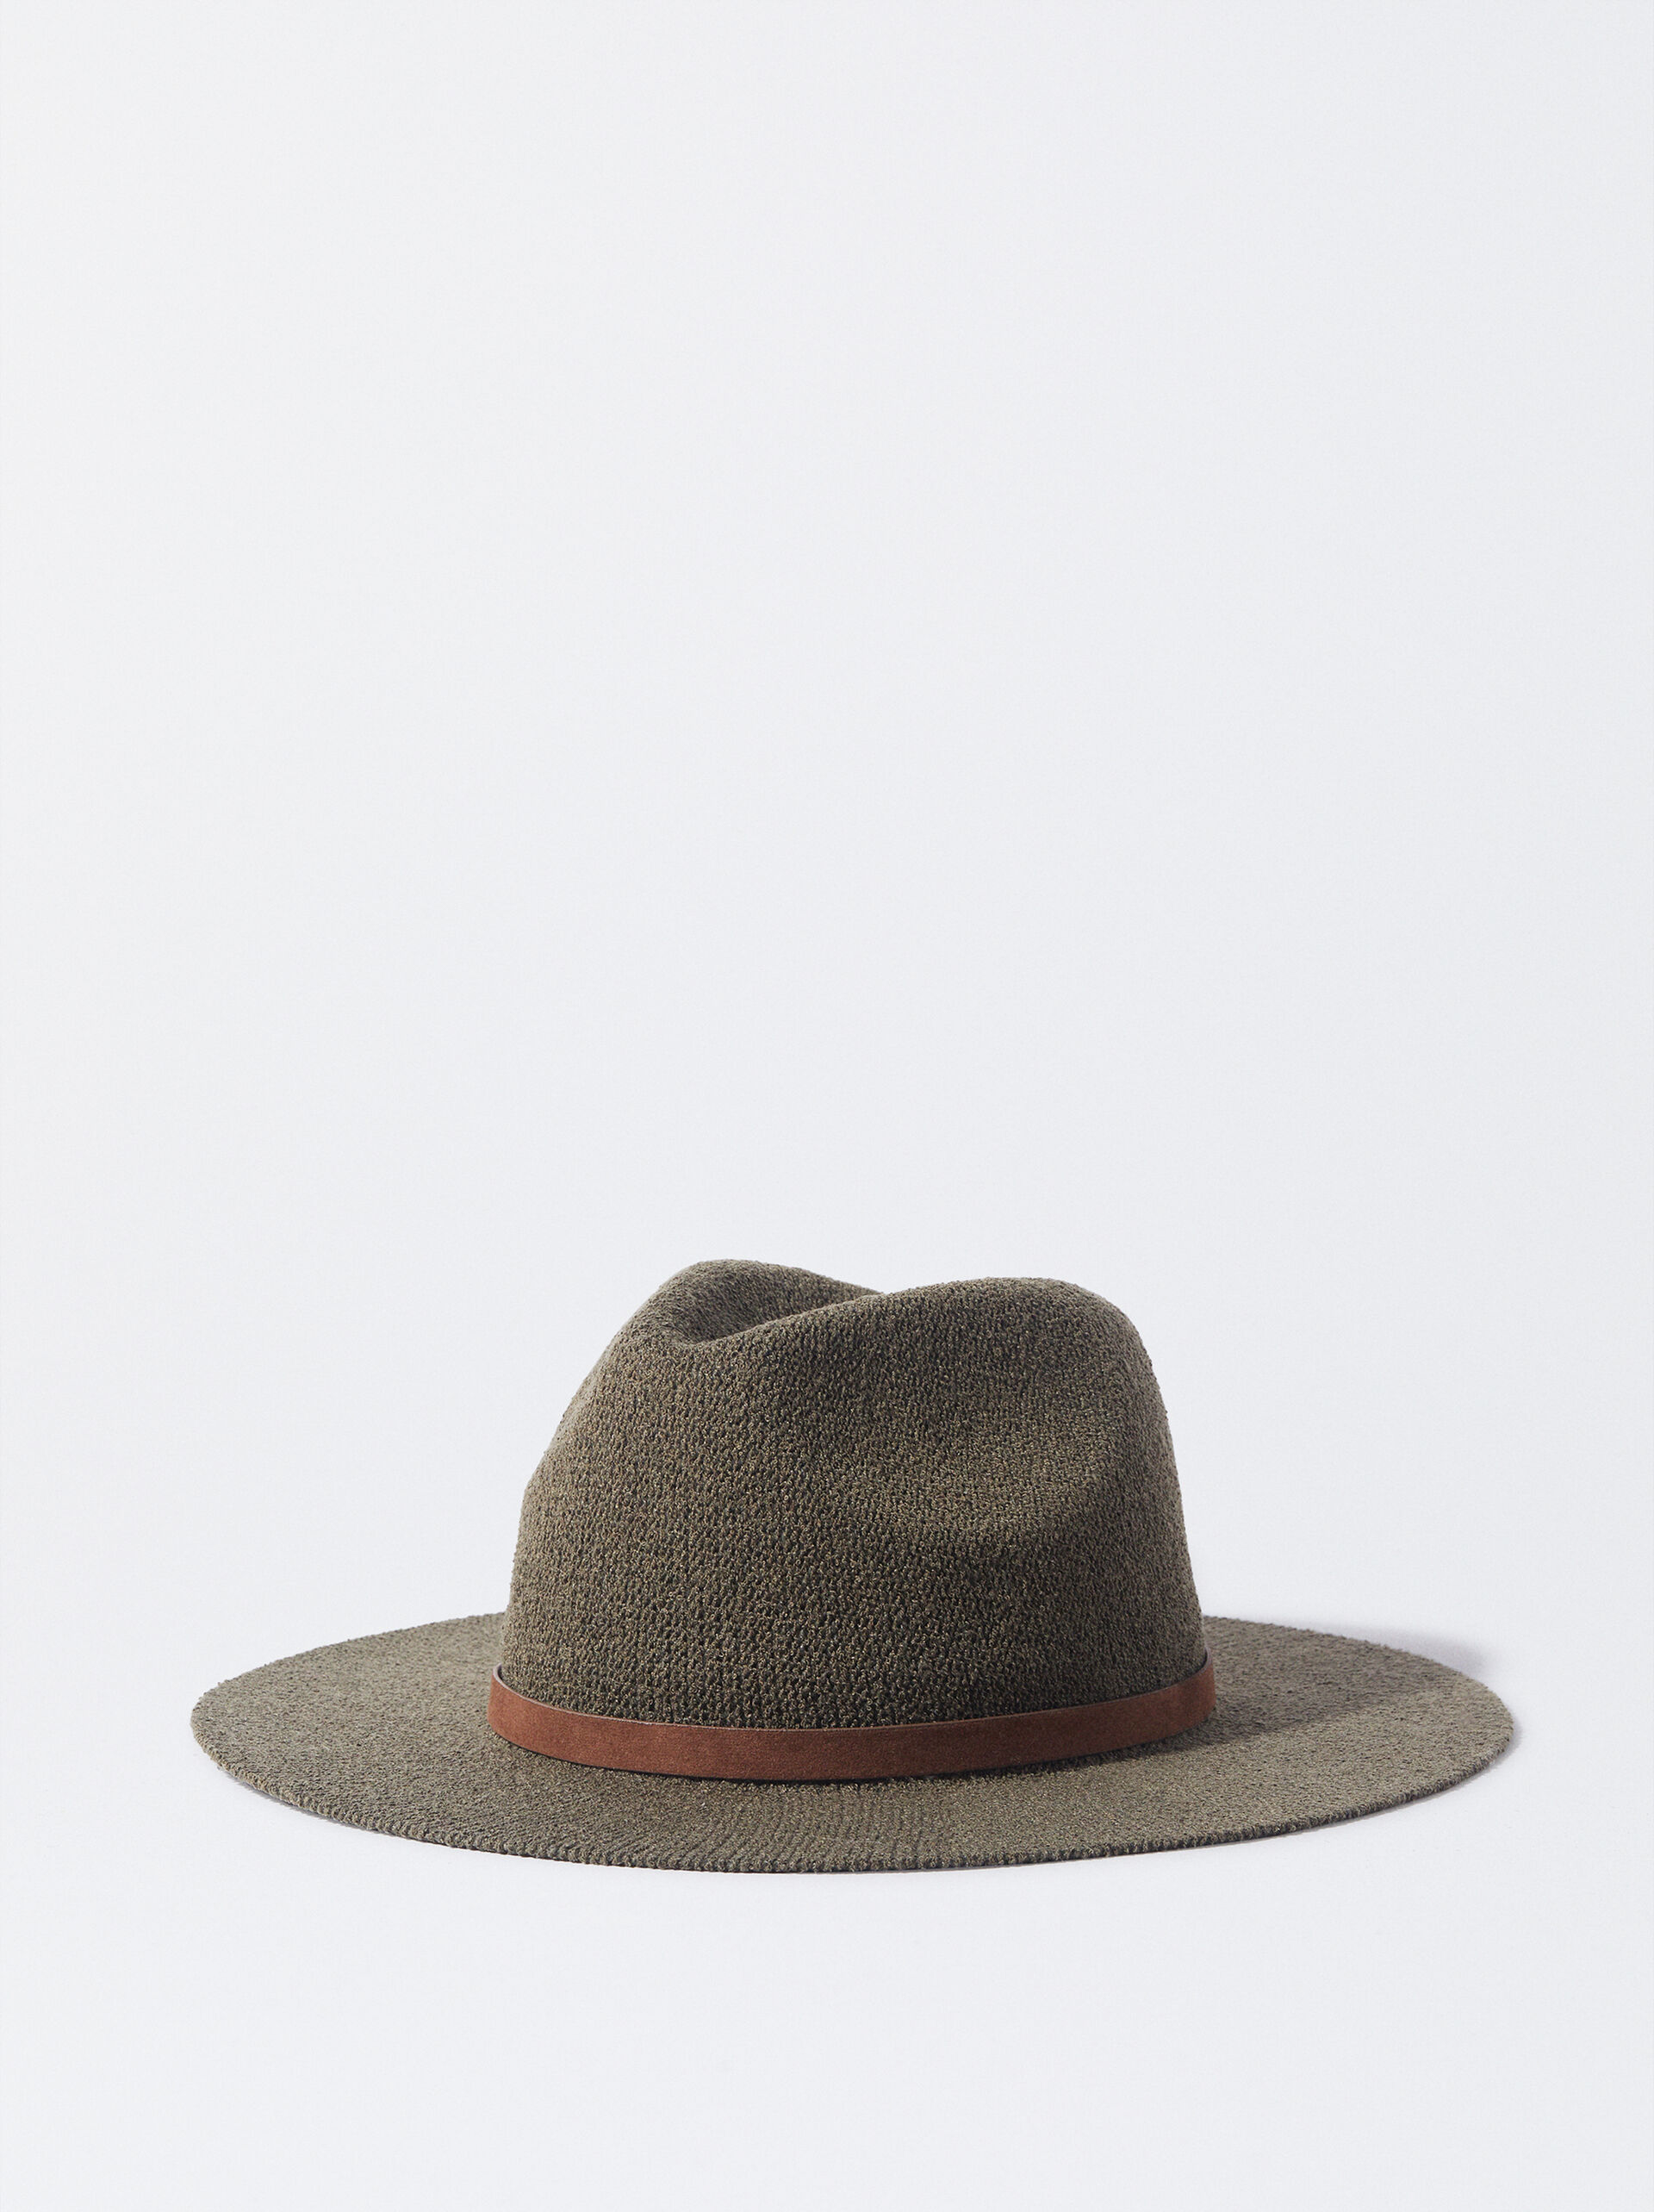 Knit Hat image number 0.0